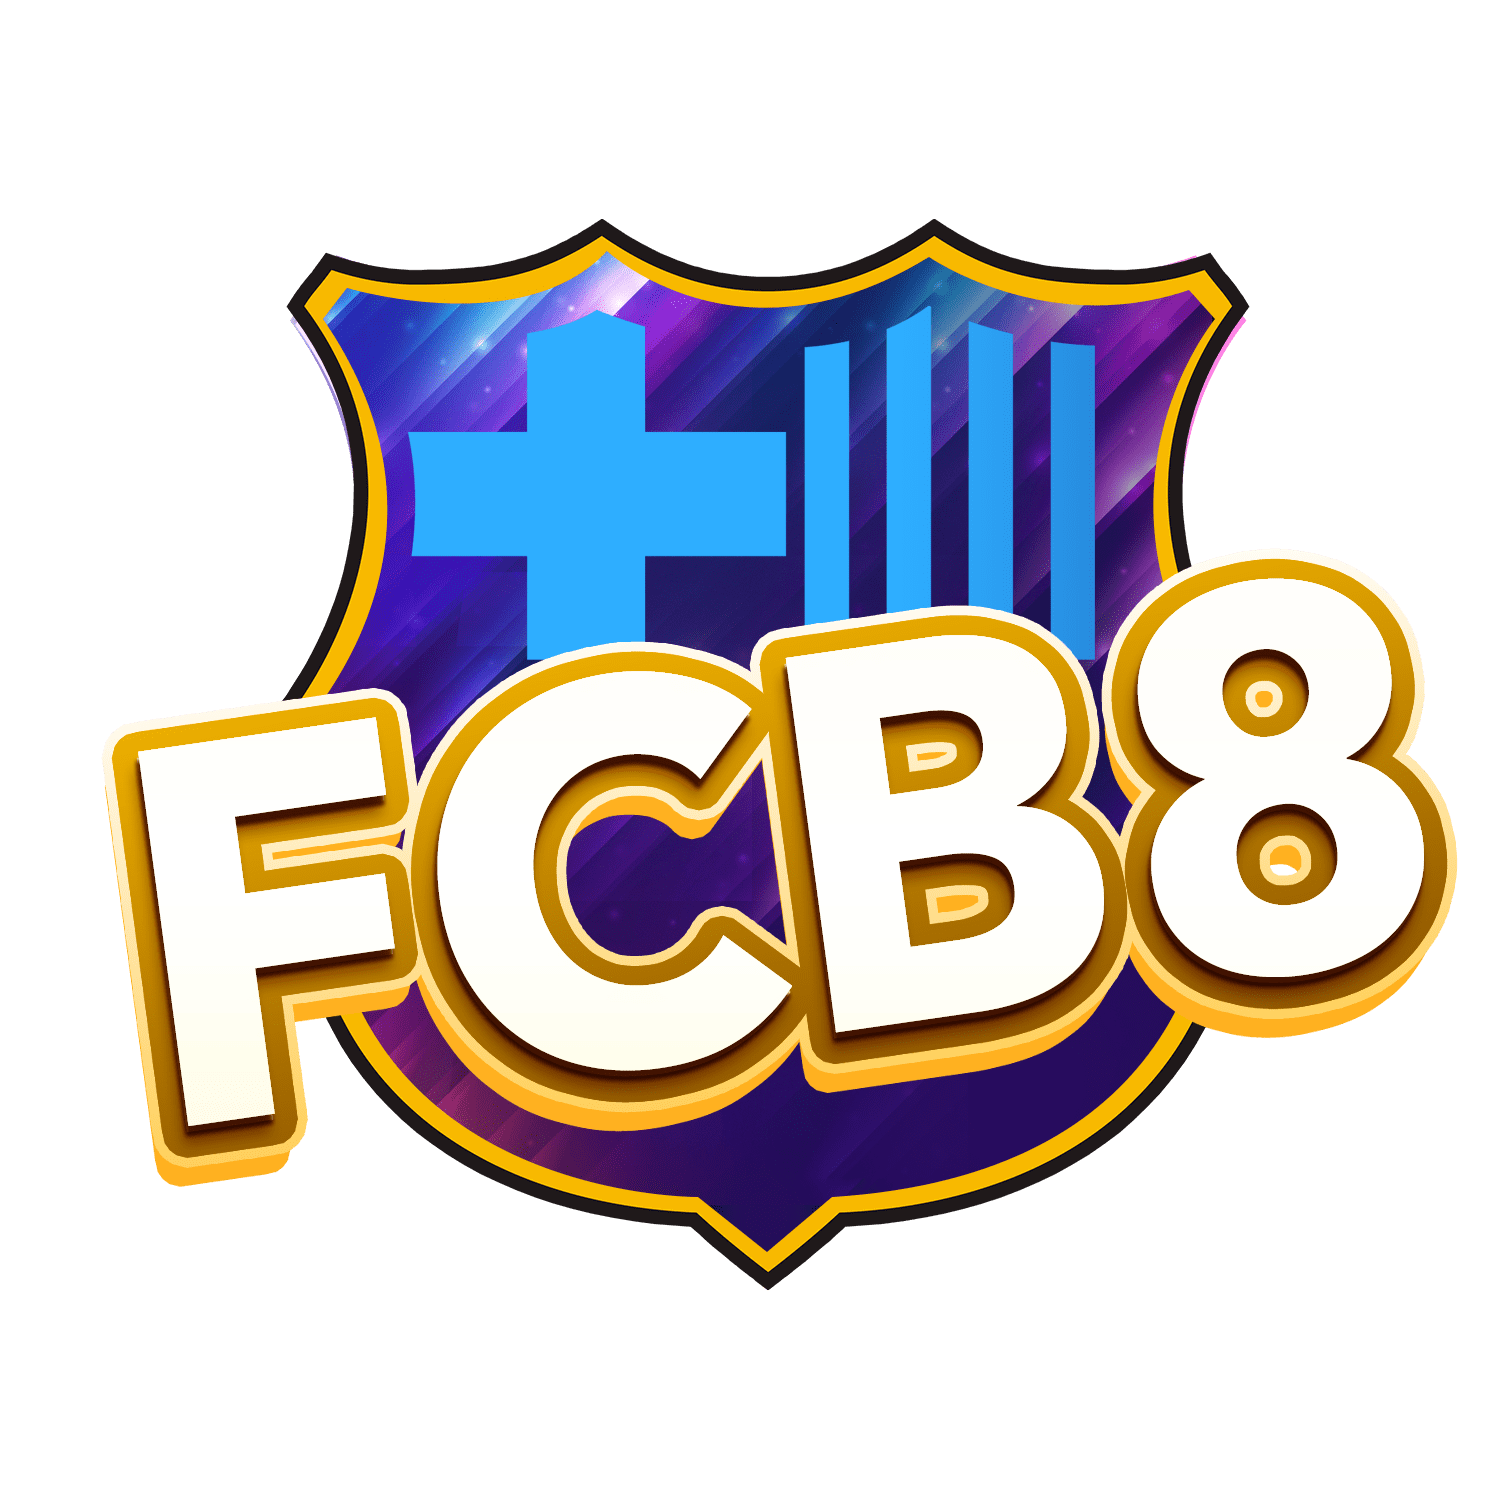 Nhà cái FCB8